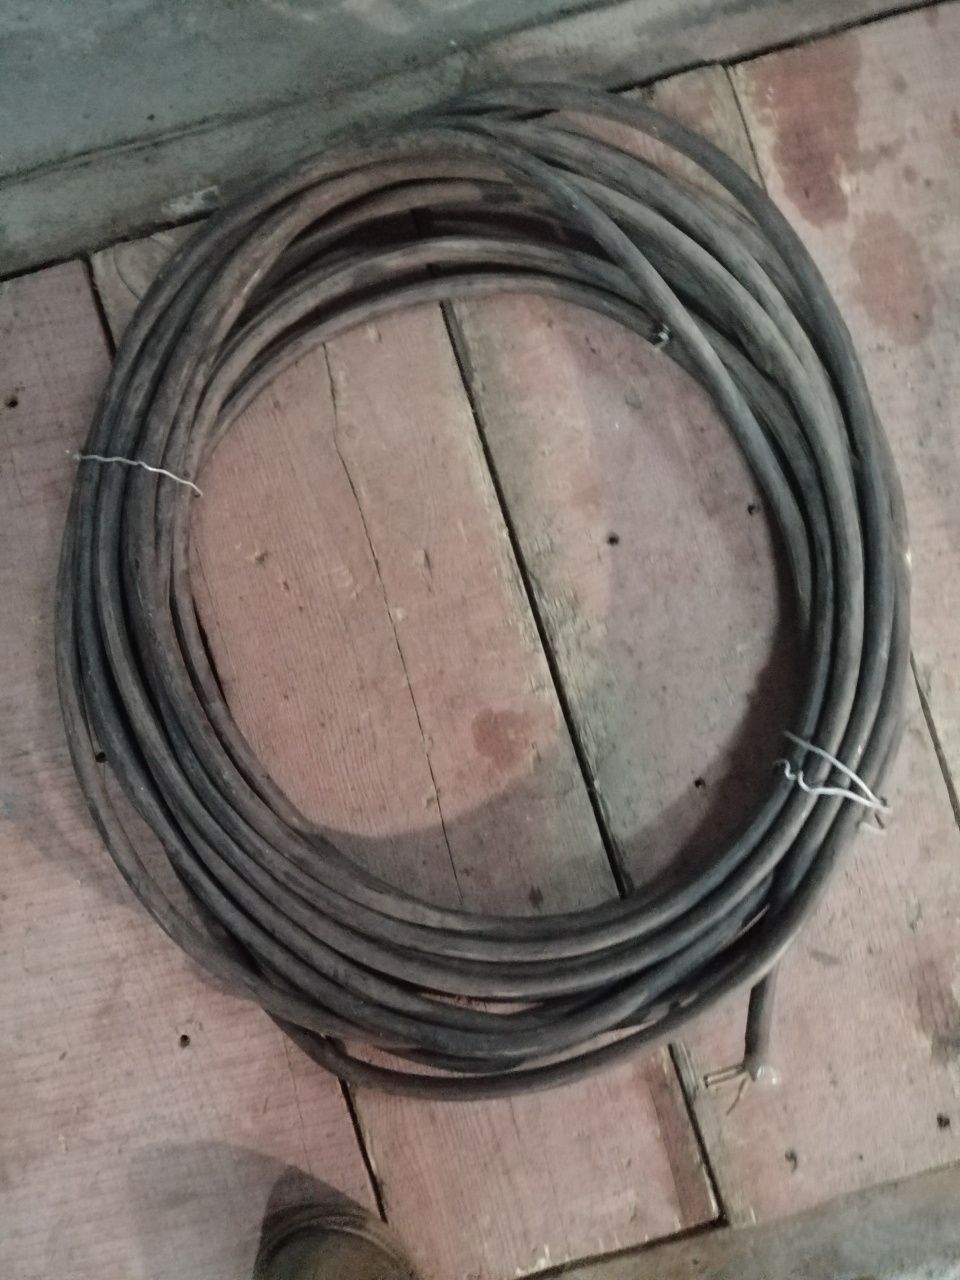 Продам кабель трех жыльный медный и 4 жильный алюминевый